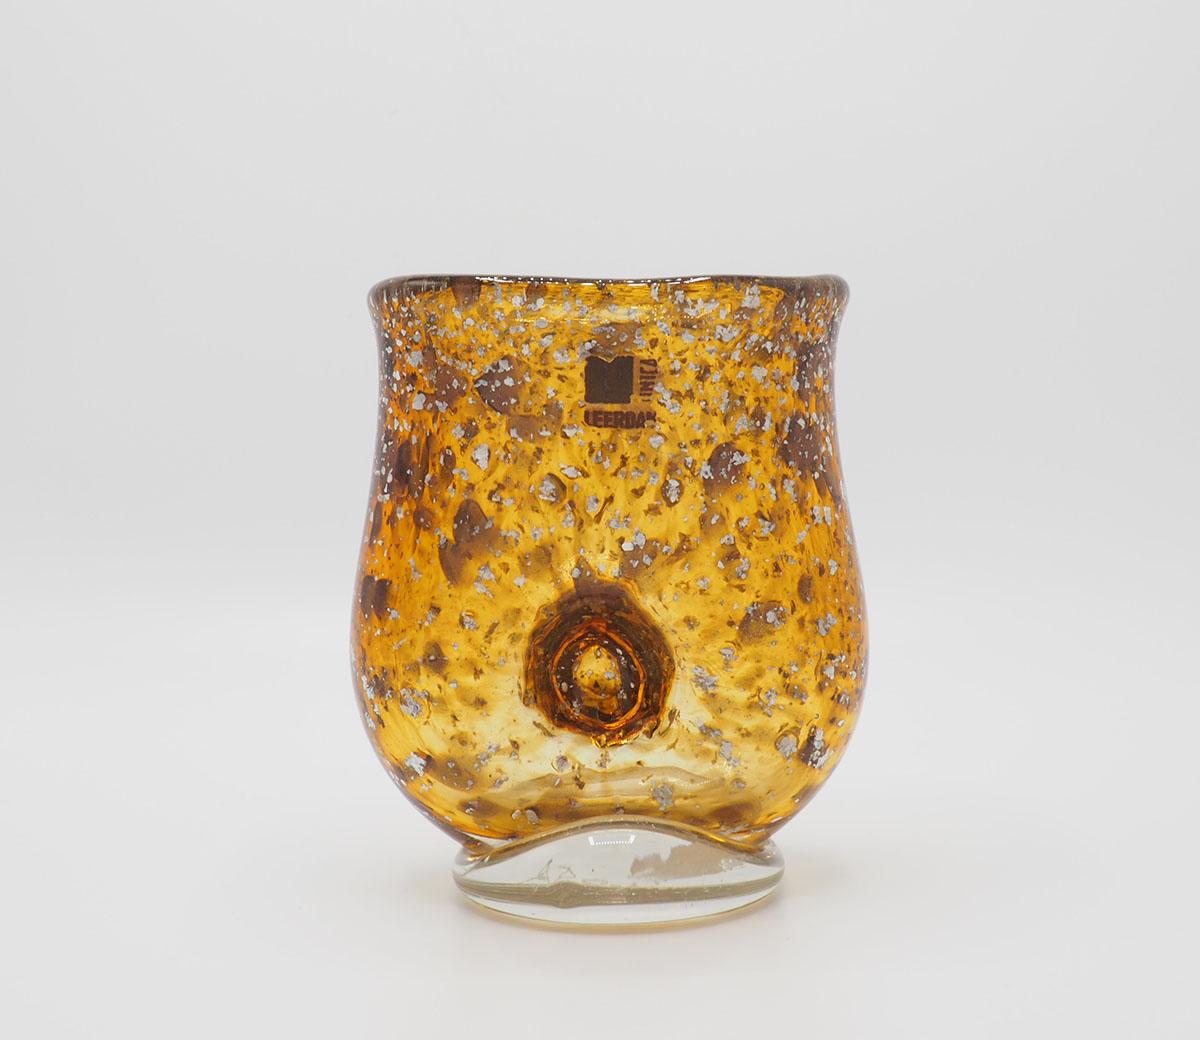 Eine UNICA-Glasvase des niederländischen Glaskünstlers A.D. Kopierer für glasfabriek Leerdam
UNICA M Serie 167 aus den Jahren 1931-1932.
A.D, Copeir ist der größte Glaskünstler der Niederlande und lebte von 1901 bis 1991.
Diese mundgeblasene Vase